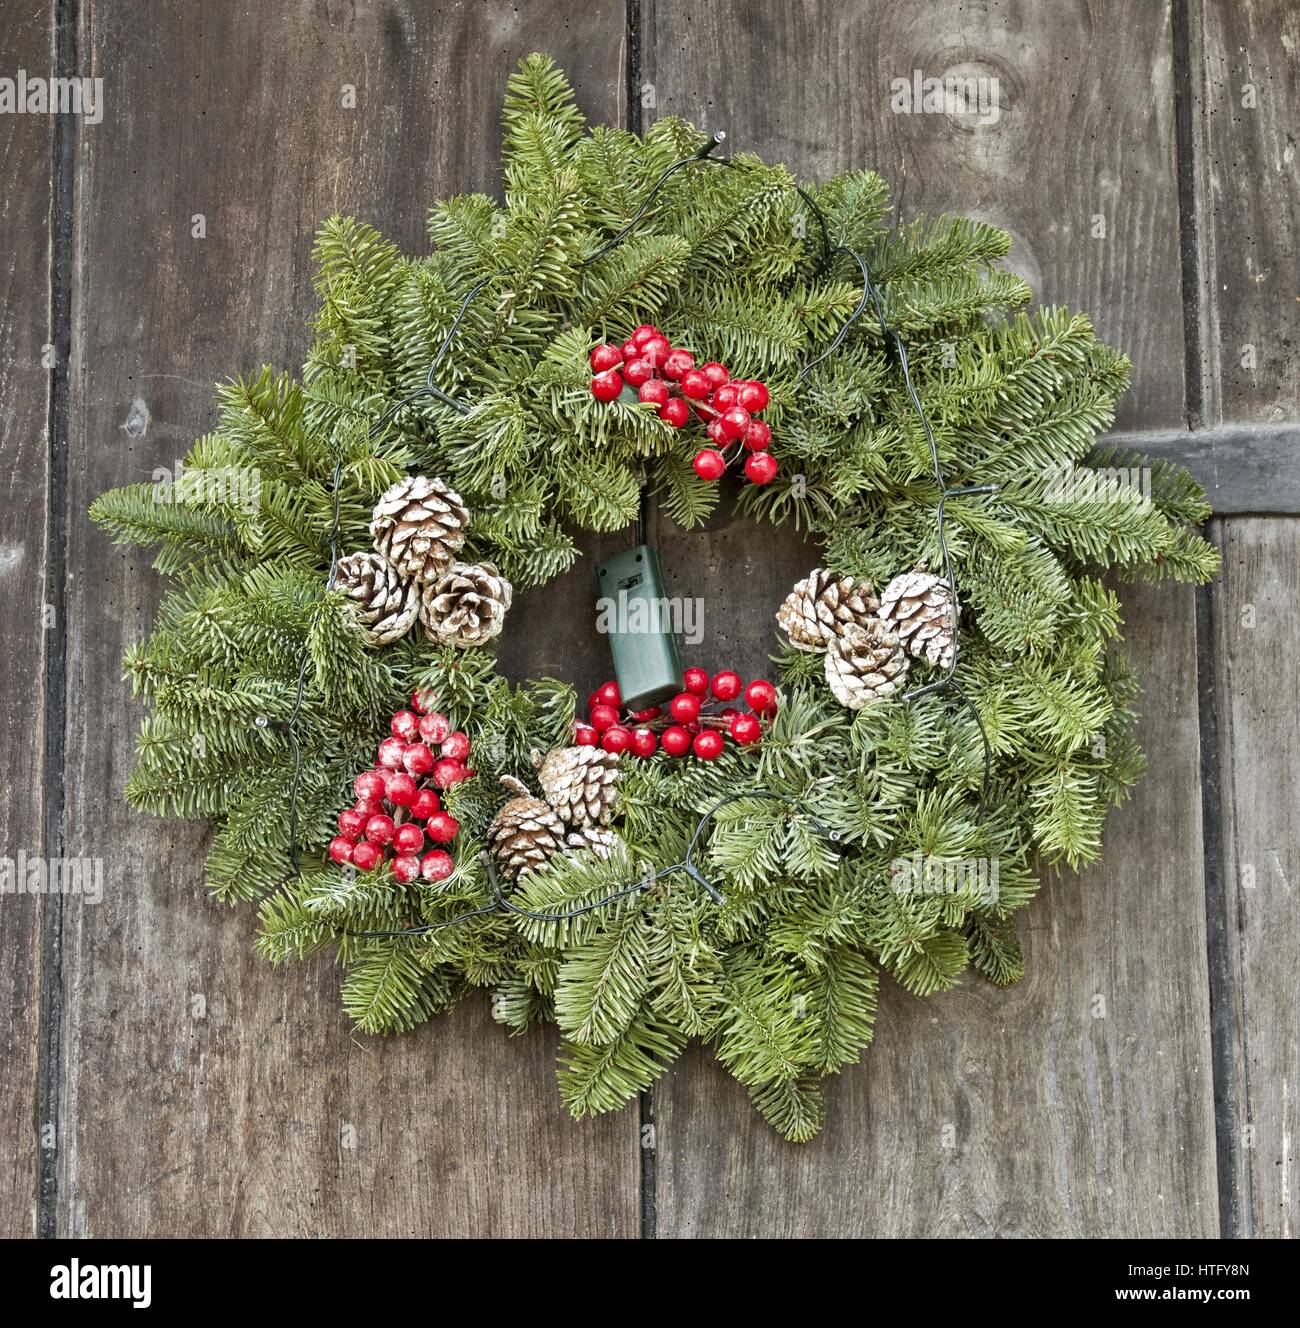 Christmas door wreaths Stock Photo